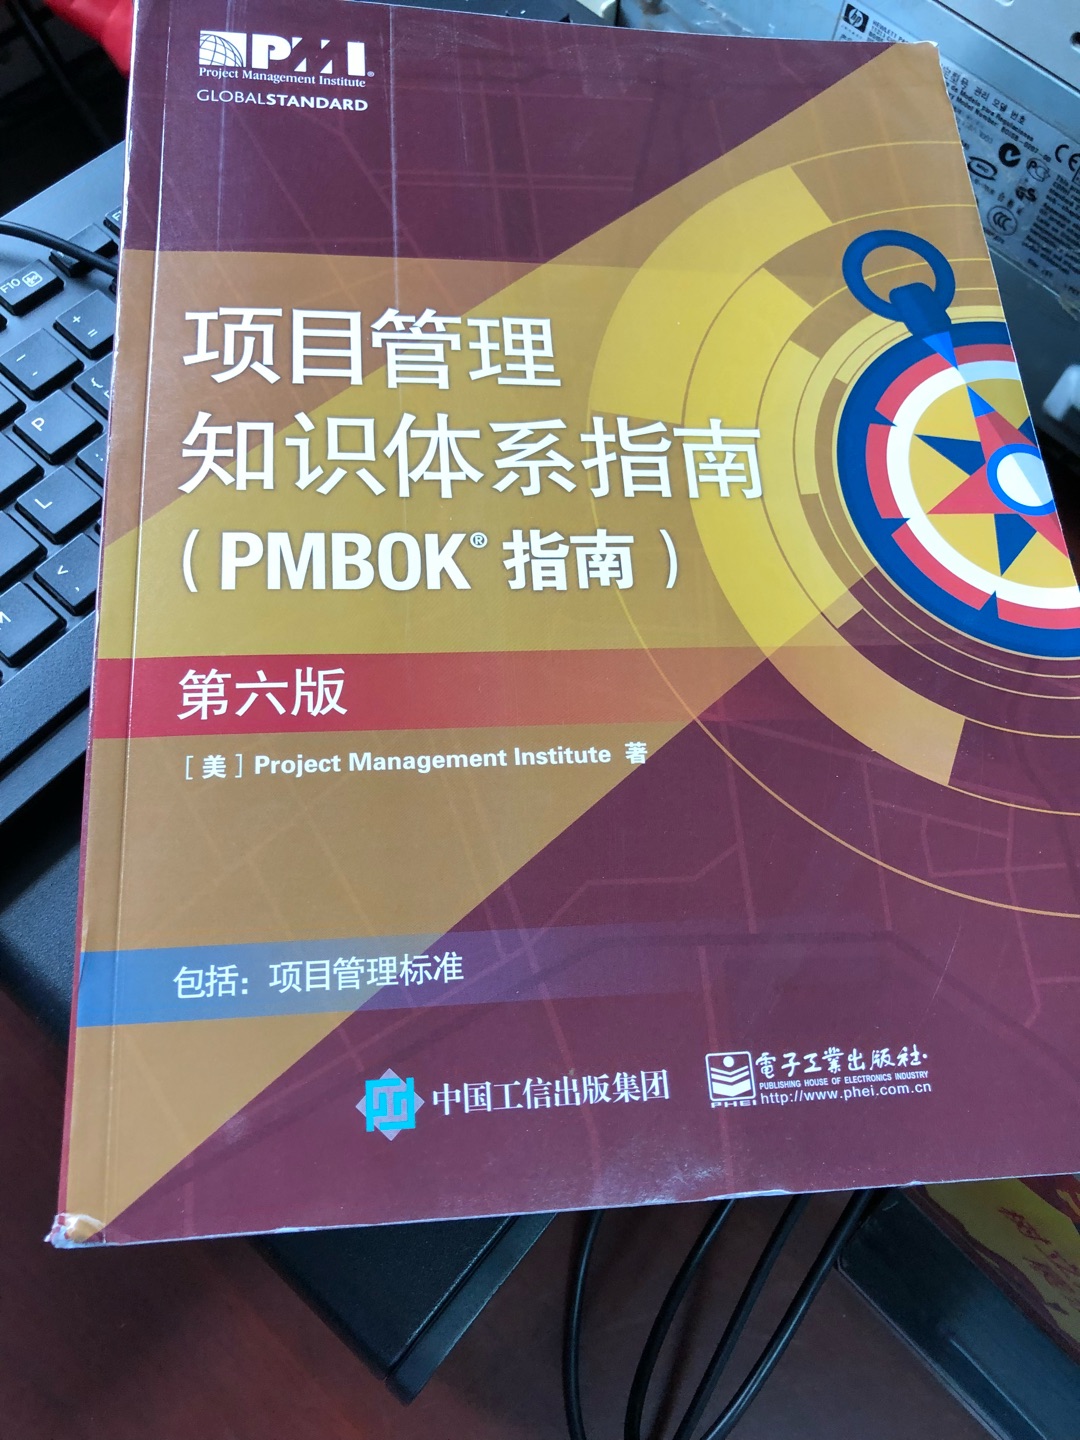 PMP官方最新版教材，很厚的一本书。努力学习，提高自己。